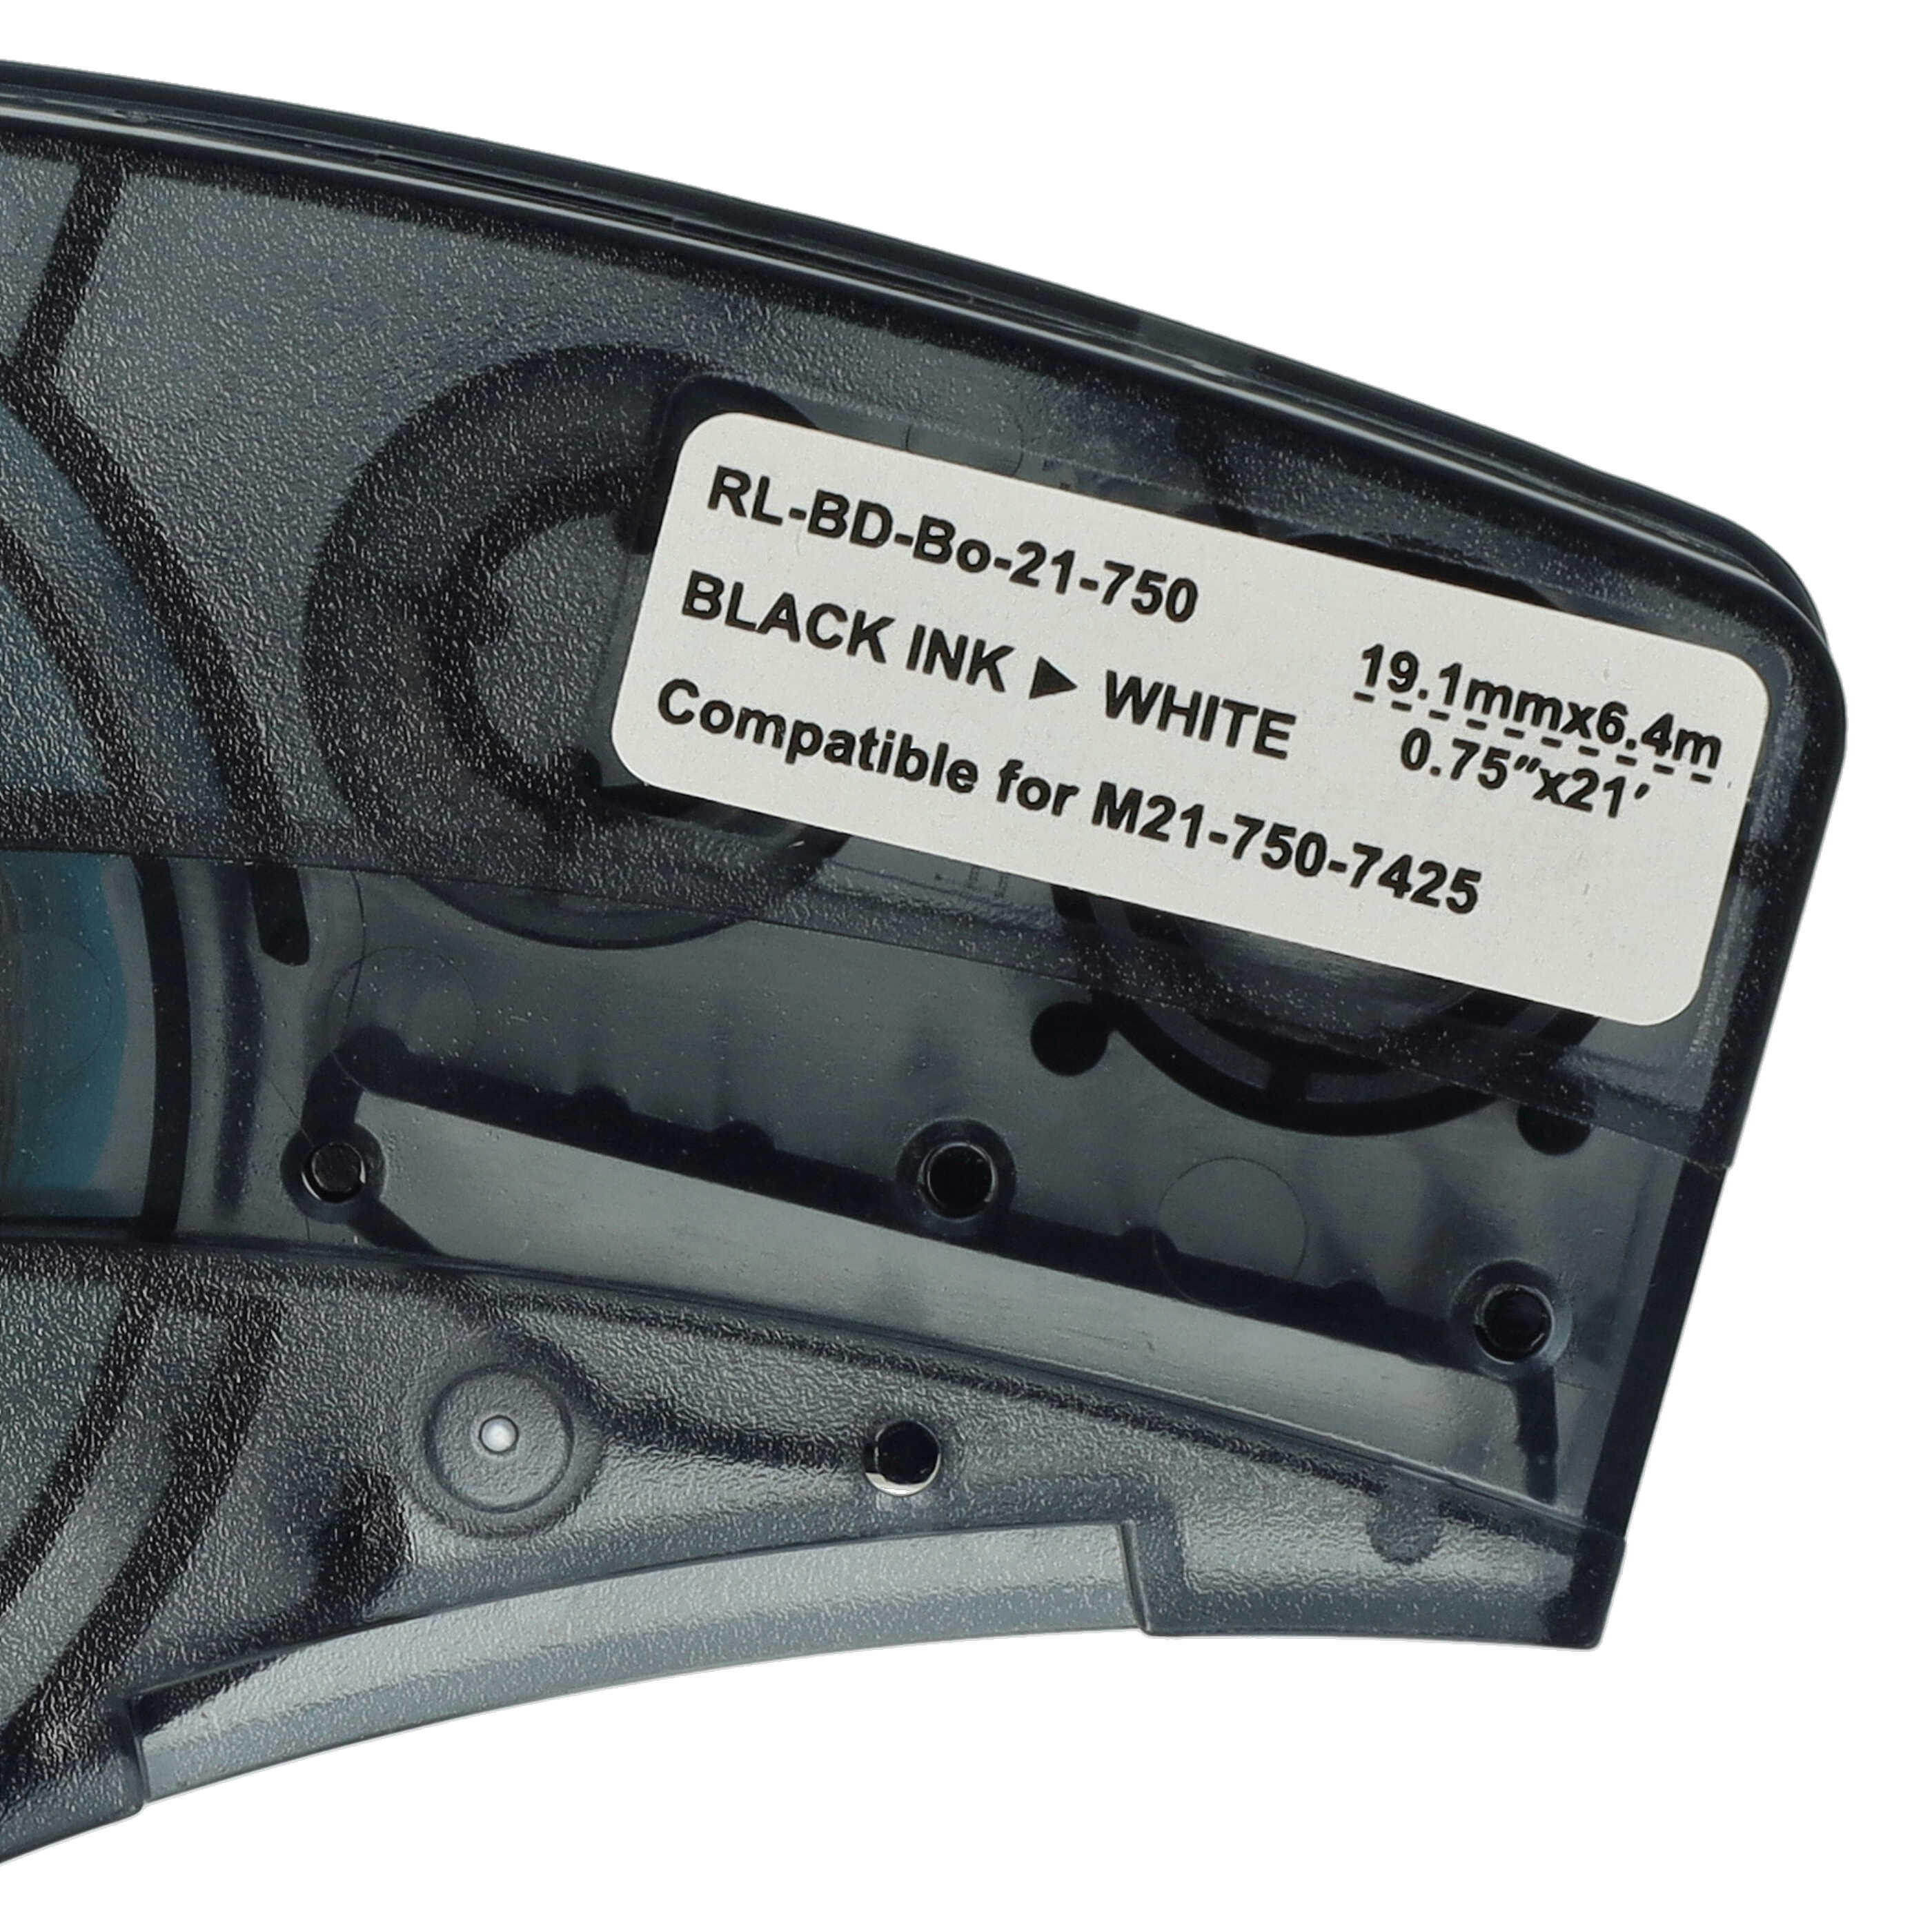 3x Cassetta nastro sostituisce Brady M21-750-7425 - 19,05mm nero su bianco, polipropilene